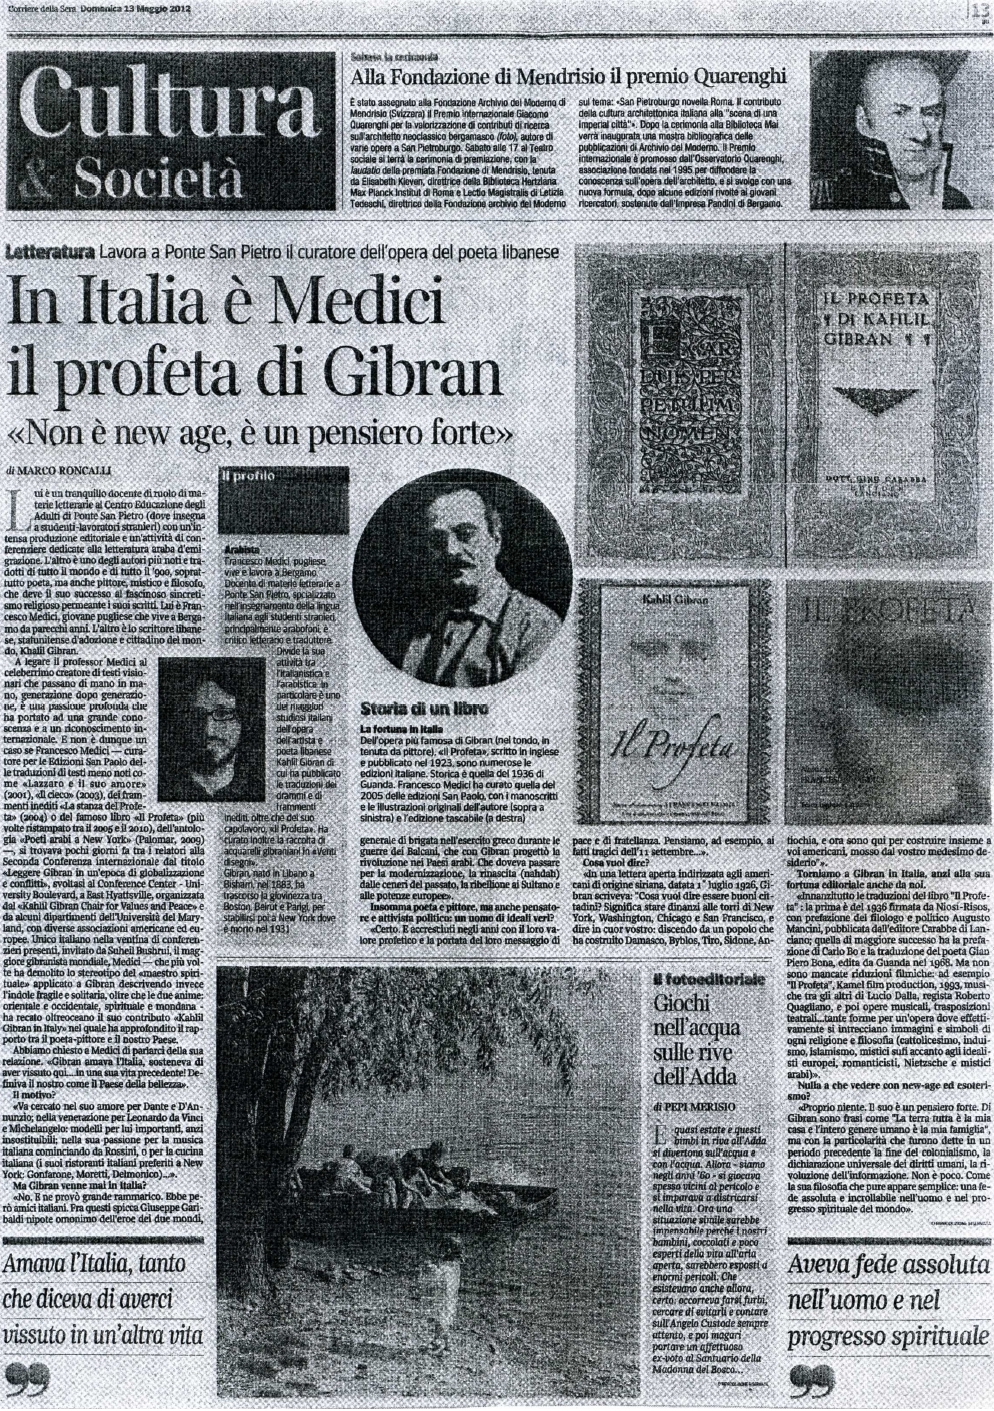 Marco Roncalli, "In Italia è Medici il profeta di Gibran", Corriere della Sera (Bergamo), May 13, 2012, p. 12 (interview).